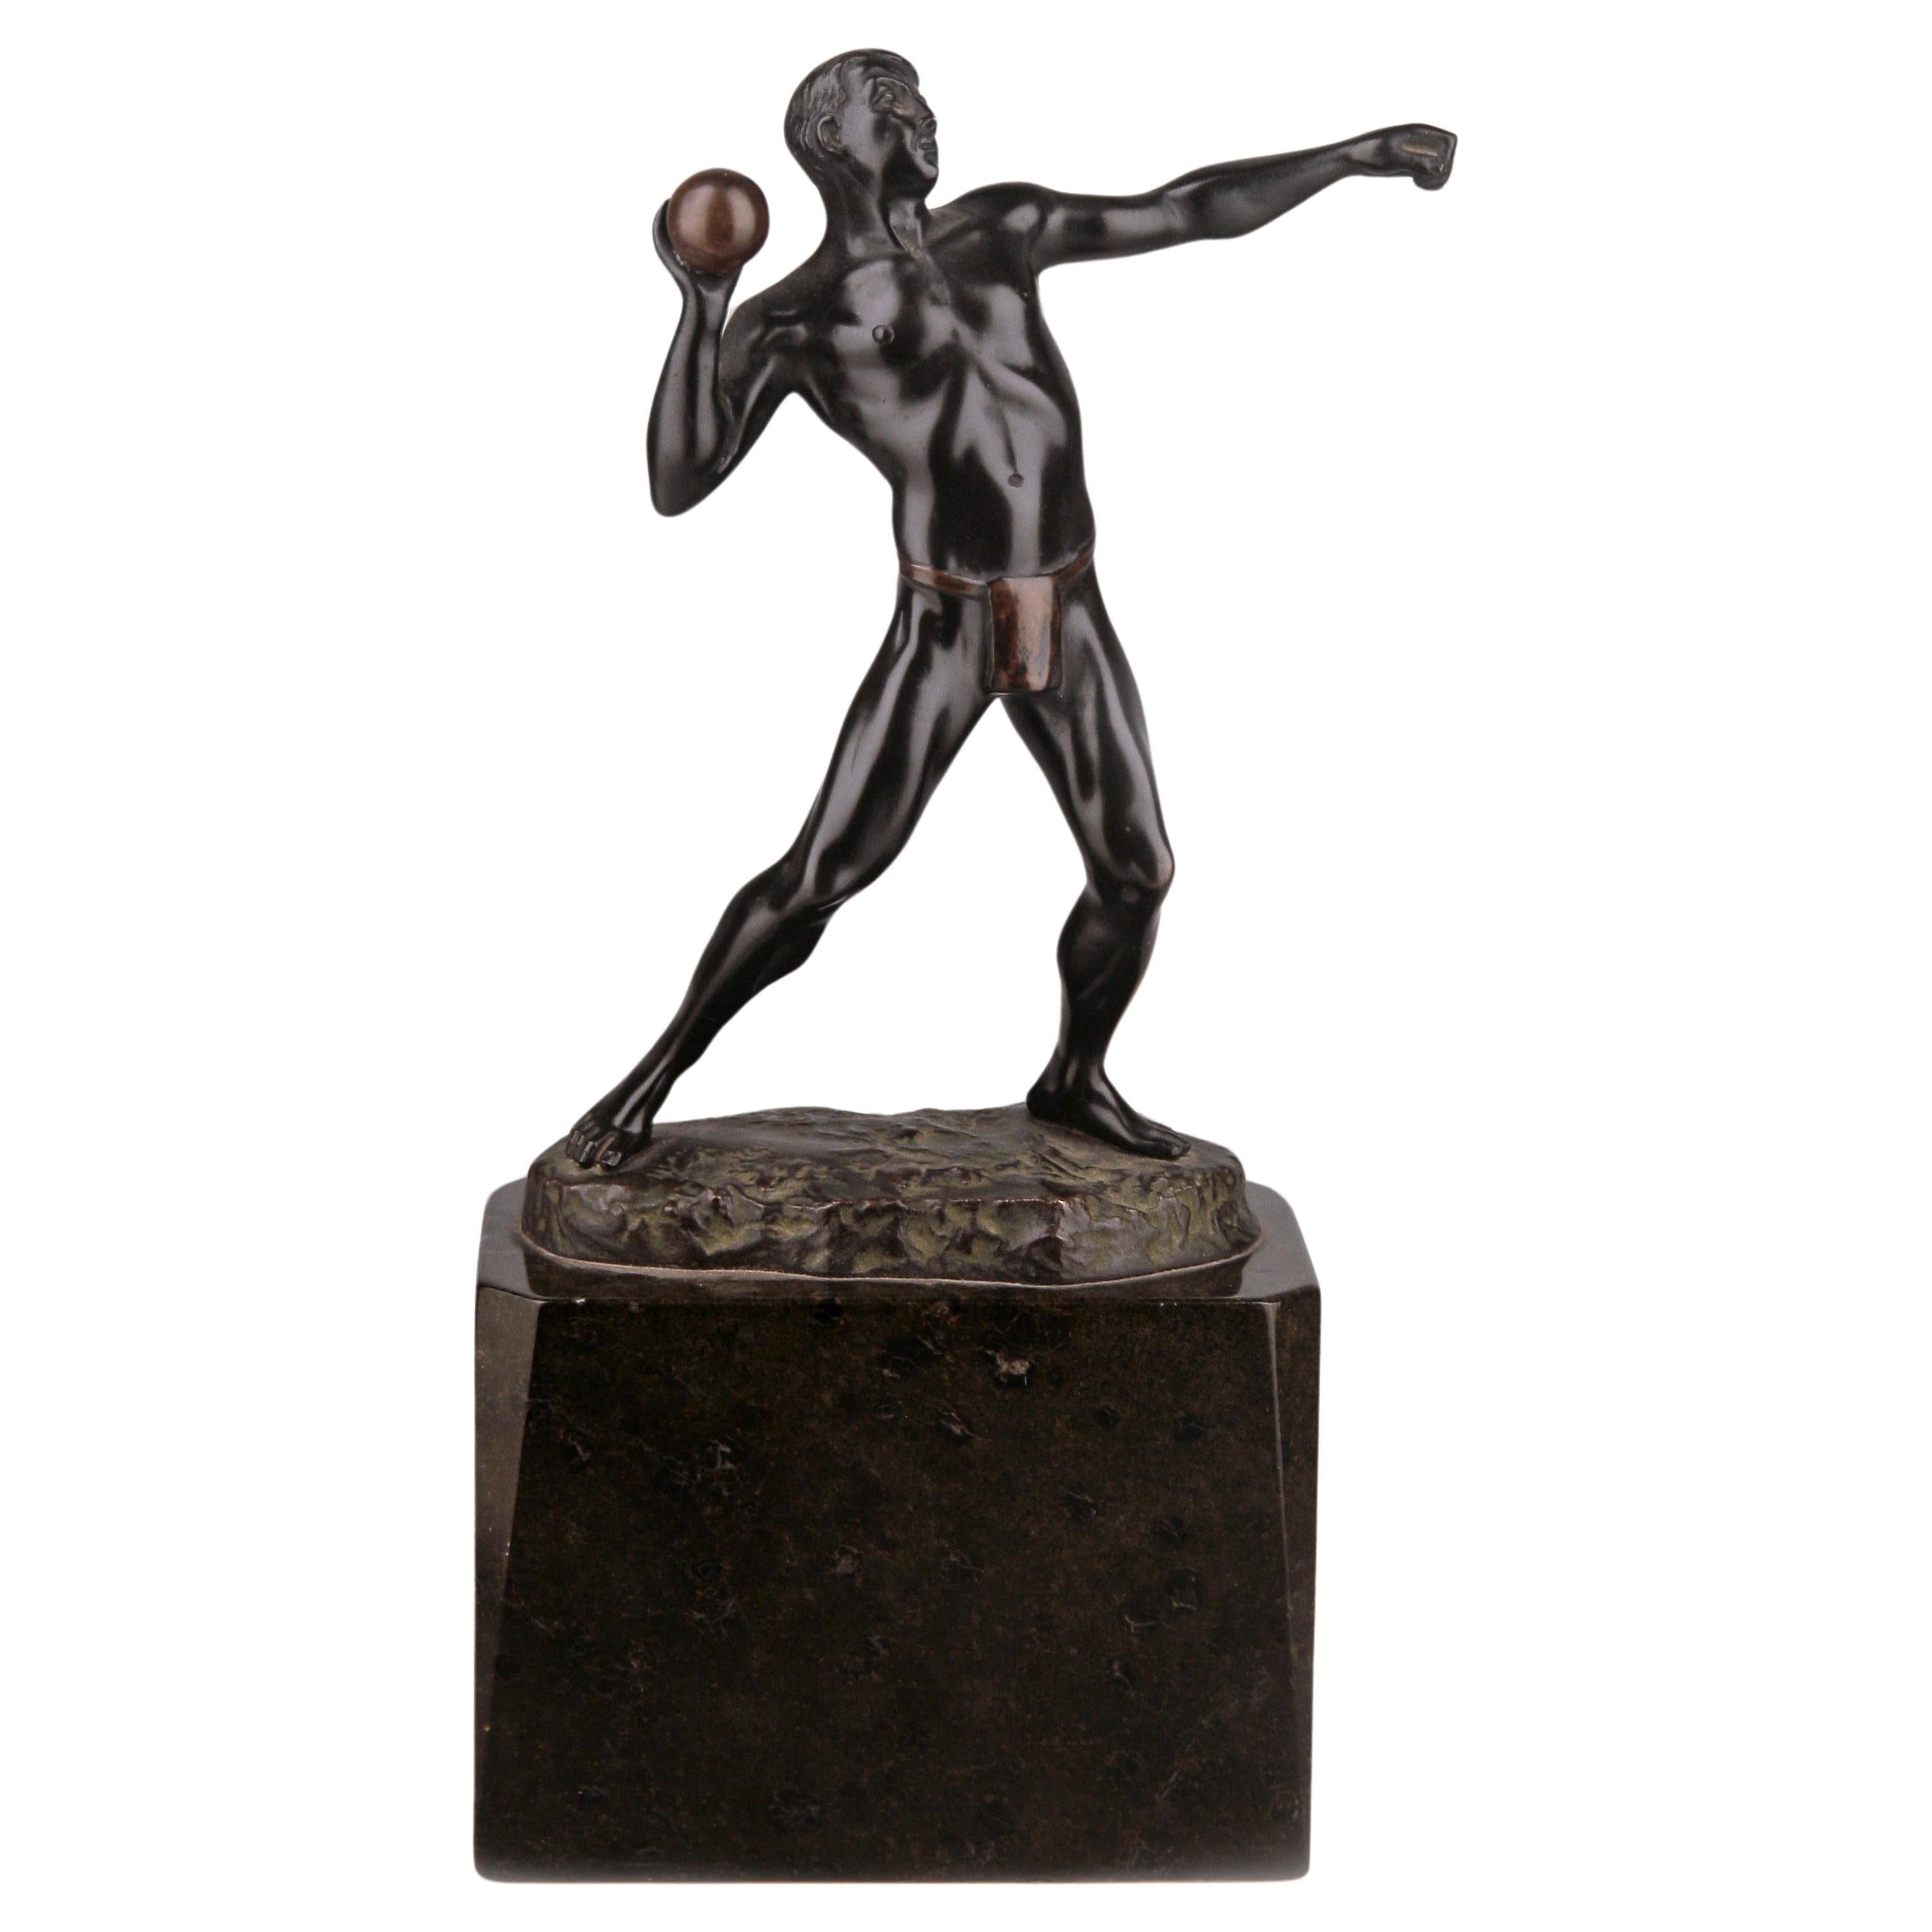 Deutsche Bronzeskulptur eines Athleten im Jugendstil, der einen Ball umdreht, von Schmidt-Felling